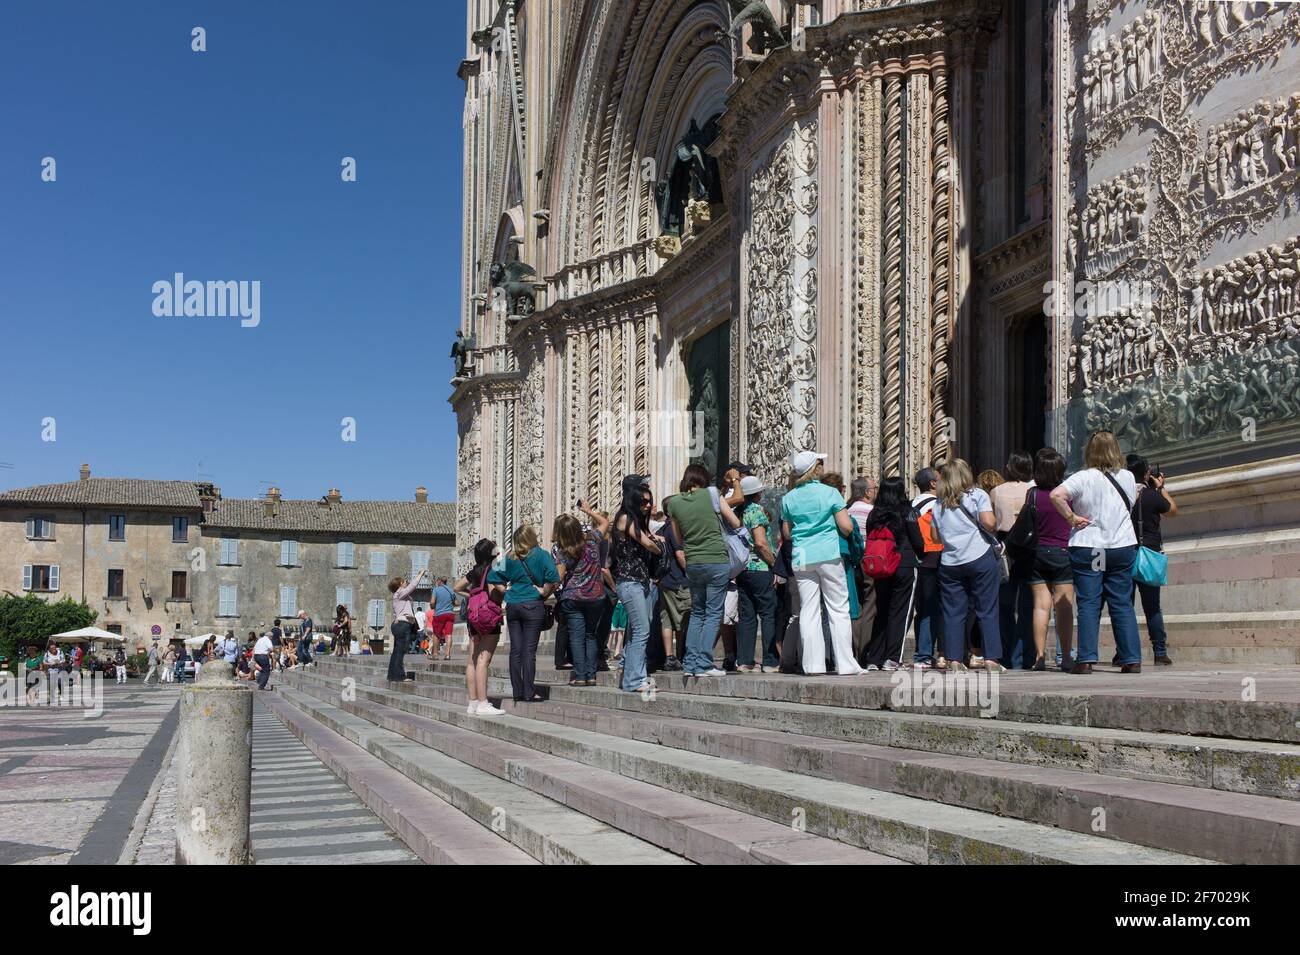 Les touristes se tiennent sur les marches en face de la cathédrale, obtenir une explication du relief sur les murs et entrer dans la cathédrale Duomo d'Orvieto Banque D'Images